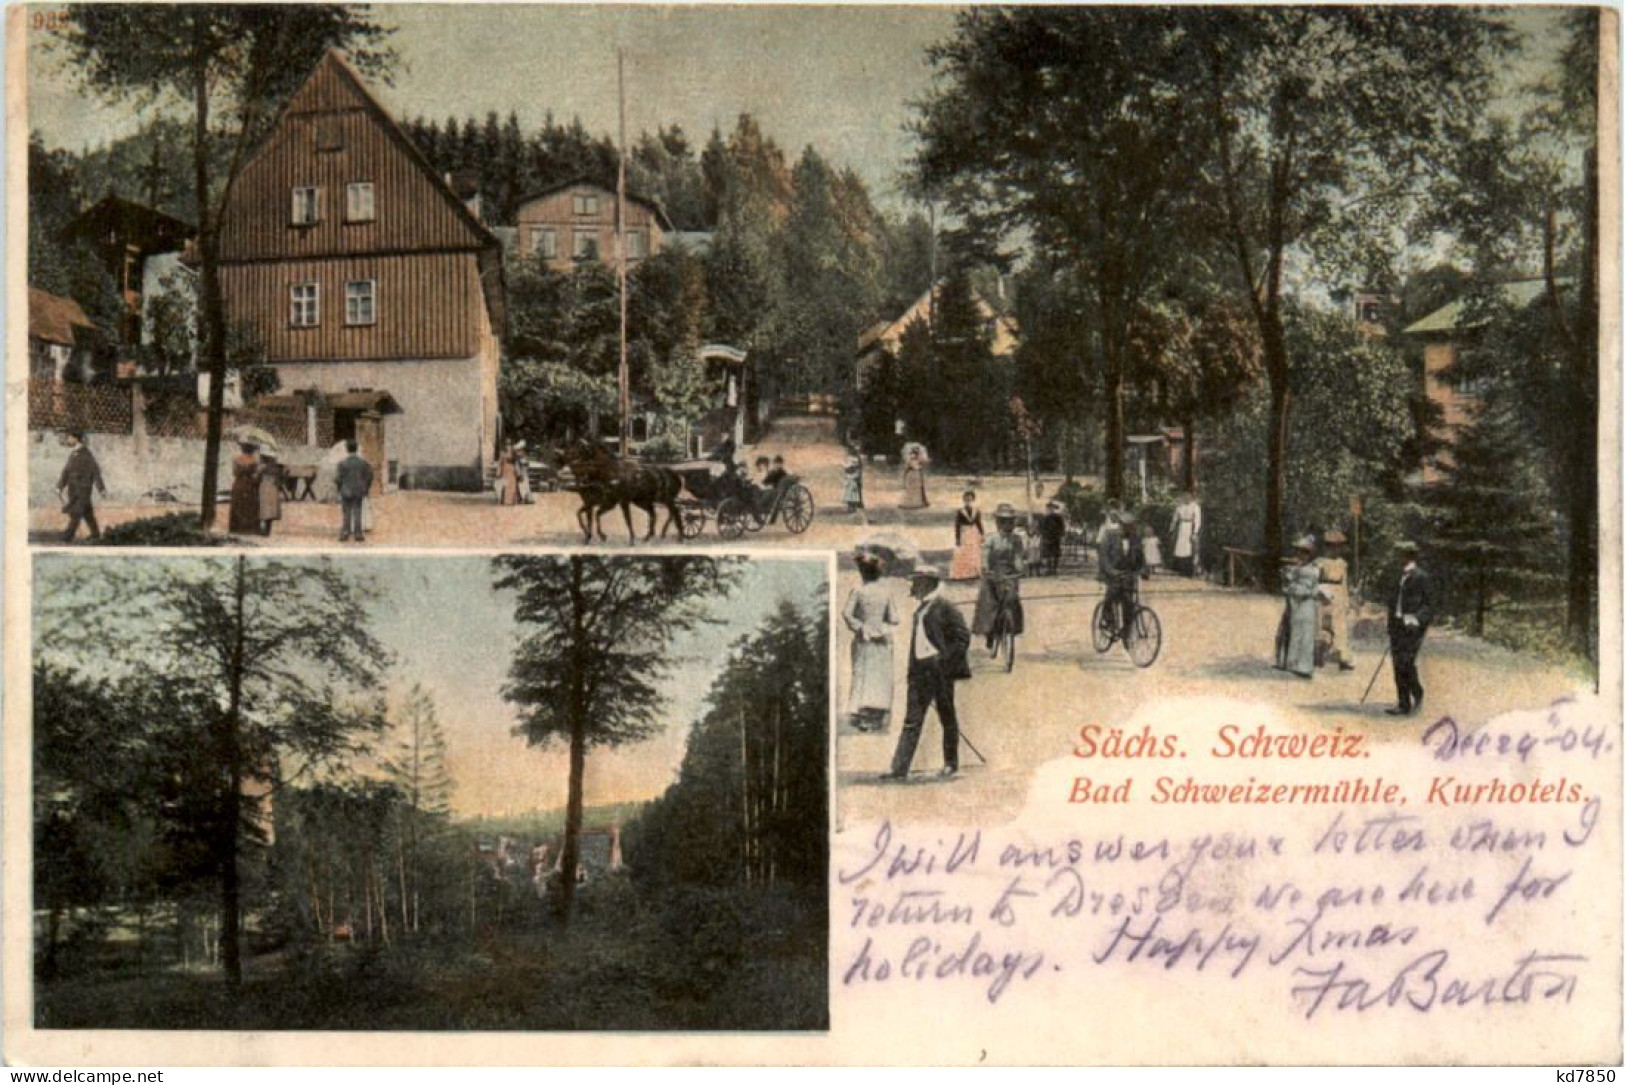 Bad Schweizermühle - Kurhotels - Rosenthal-Bielatal